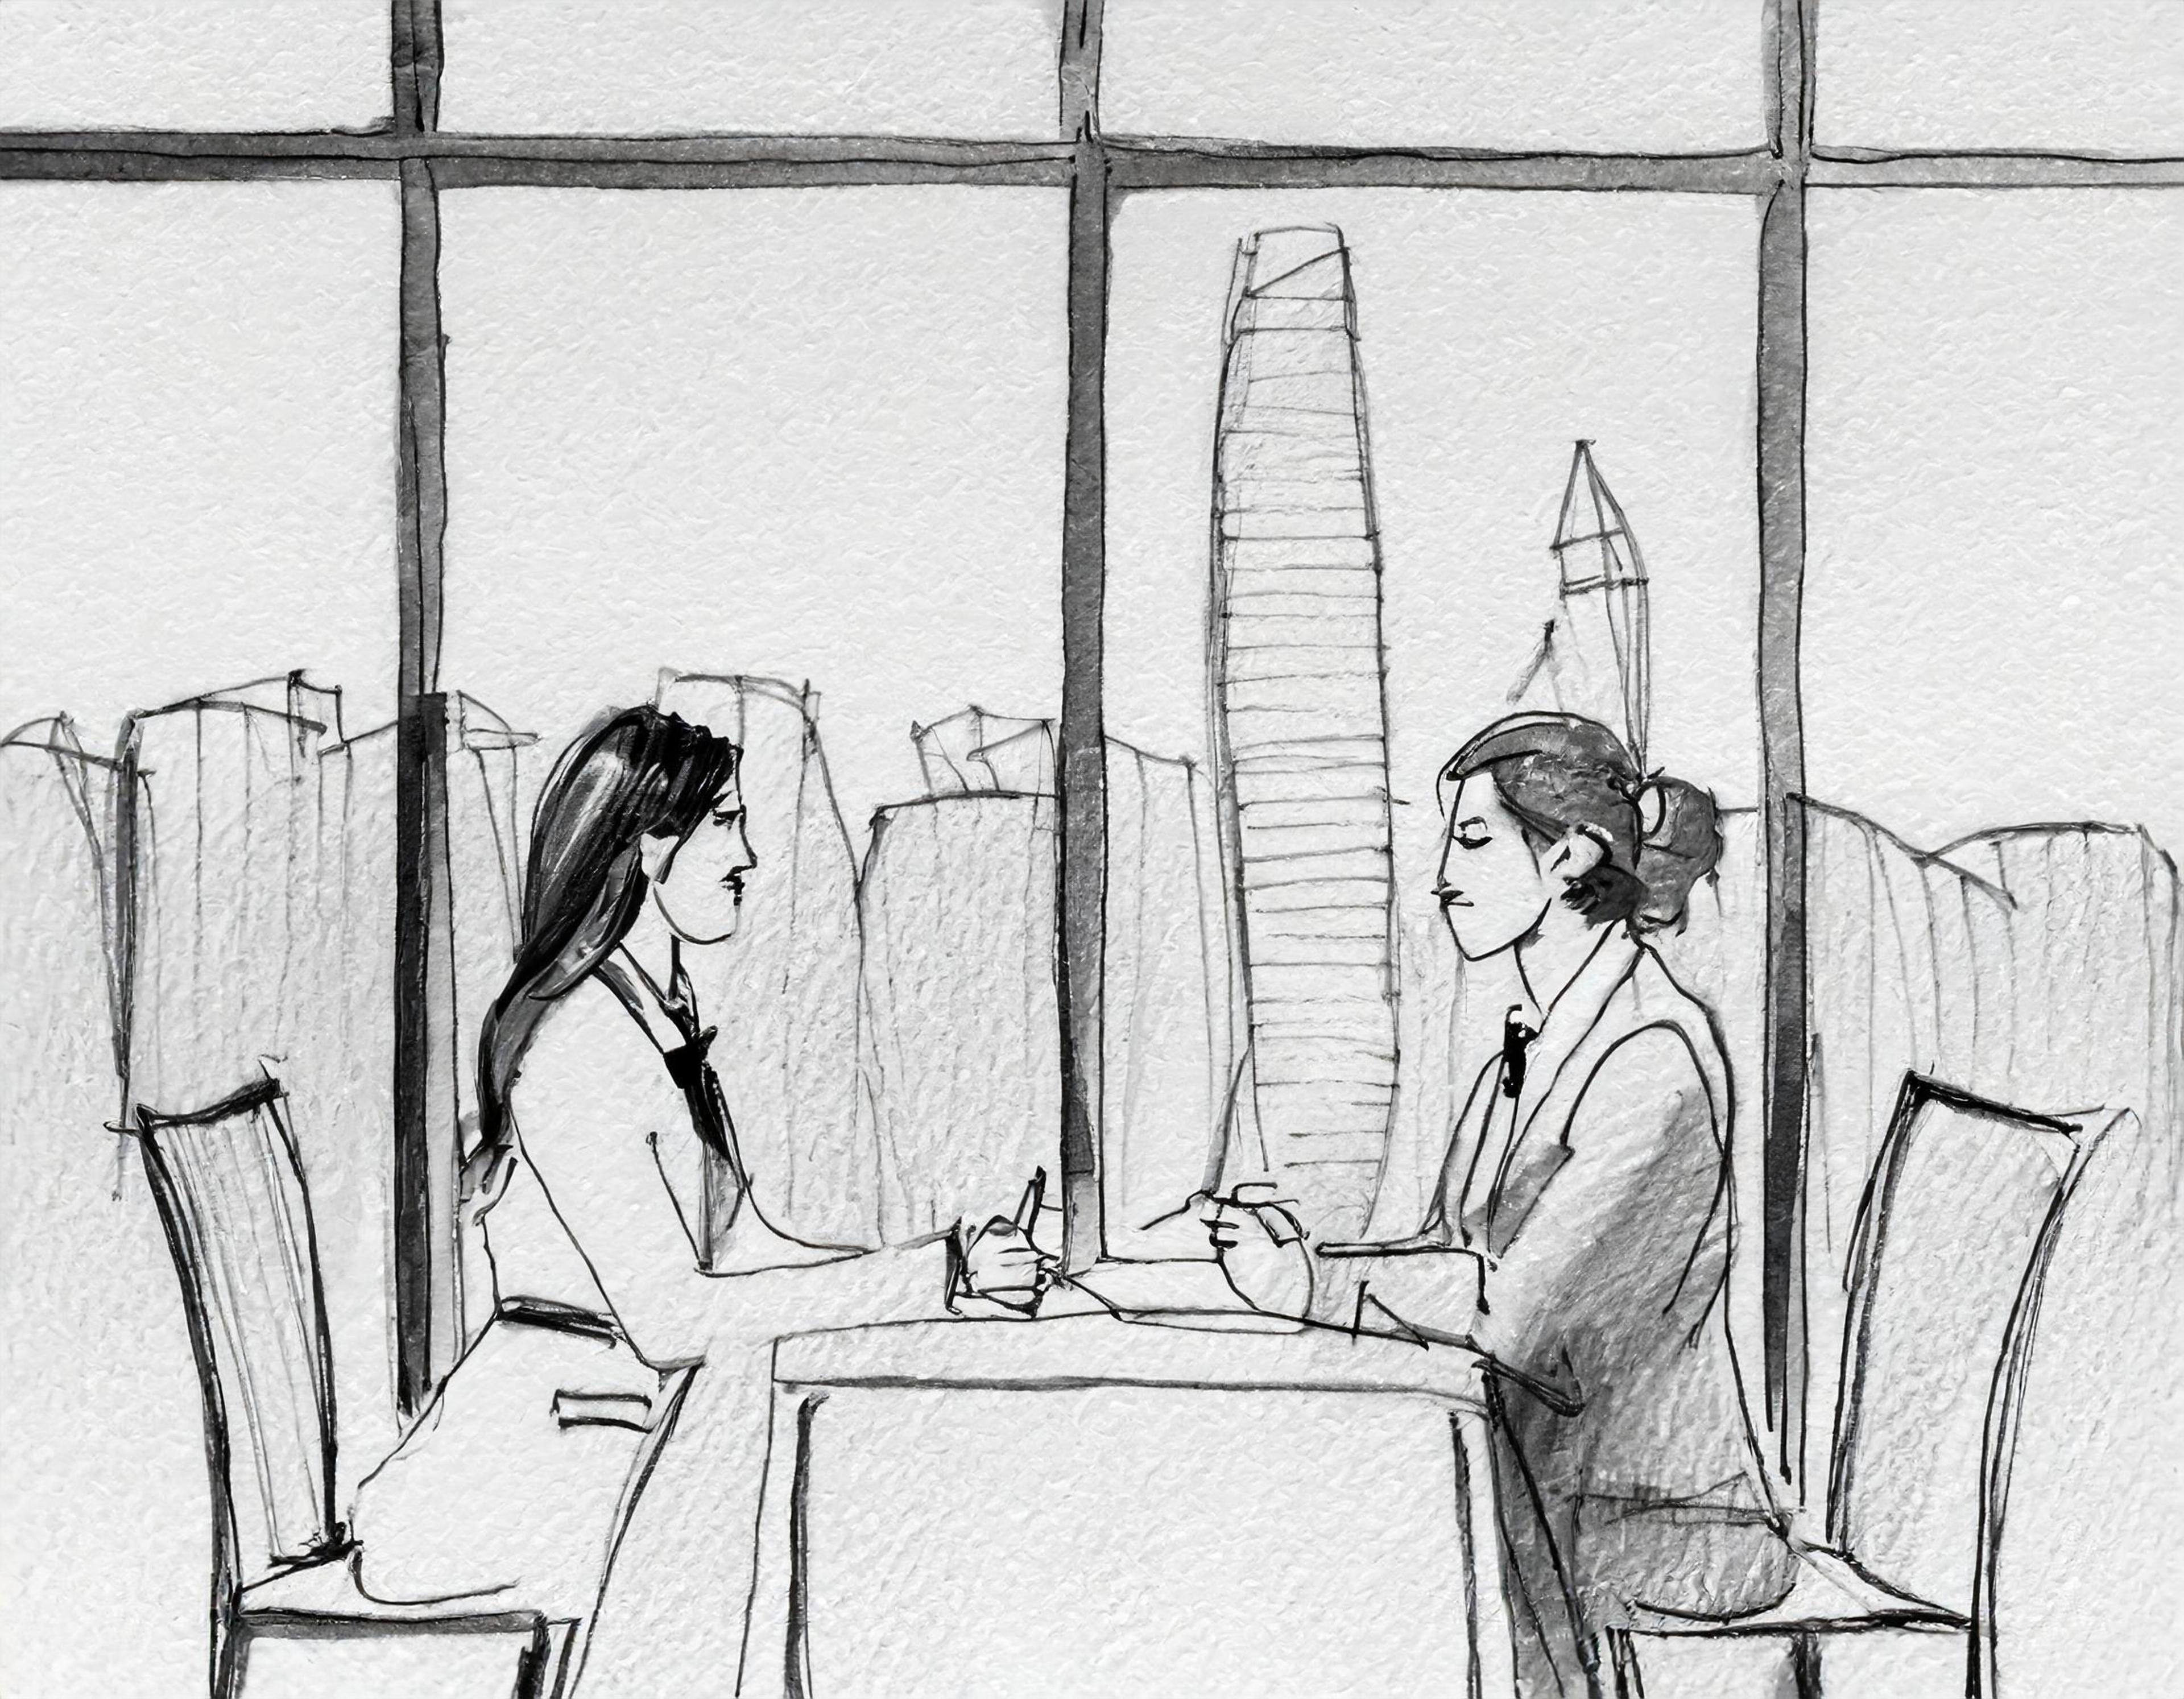 Firefly generert bilde: to personer prater med hverandre sittende ved et bord